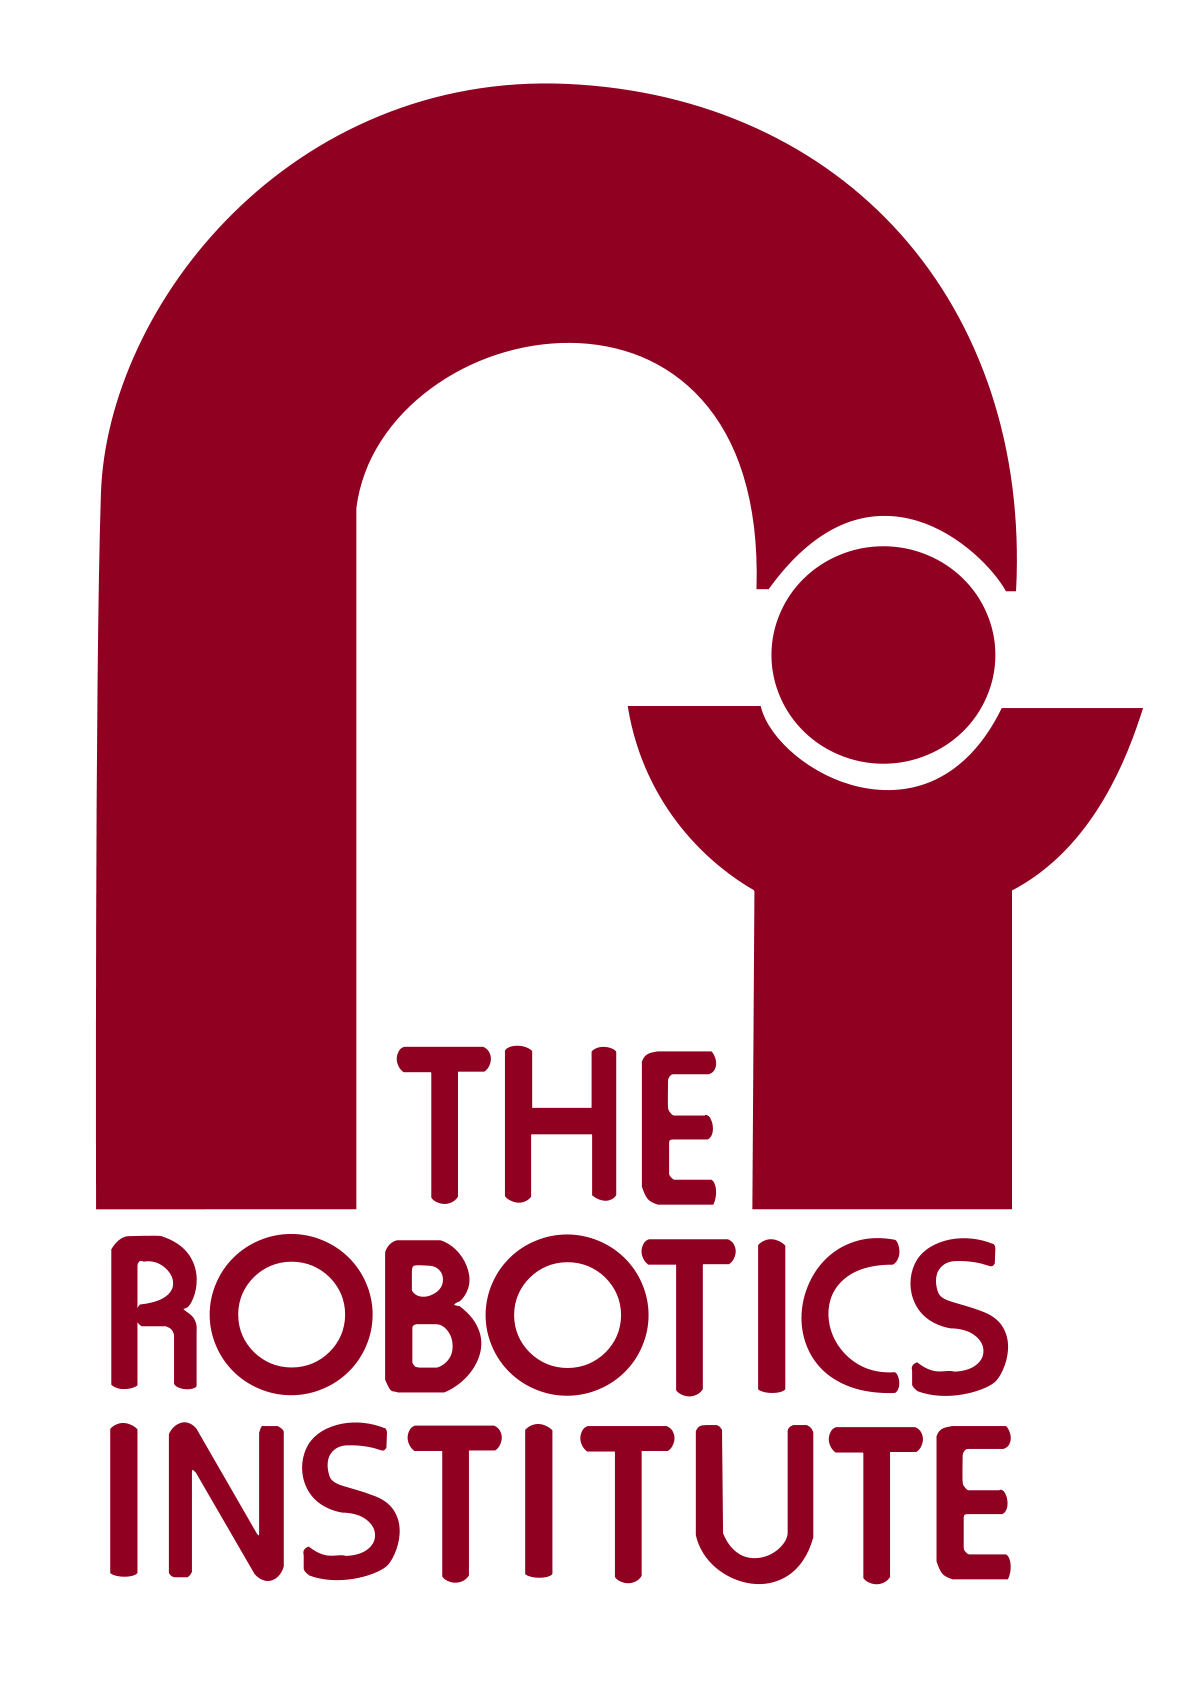 Carnegie Mellon Athletics Logo - Robotics Institute